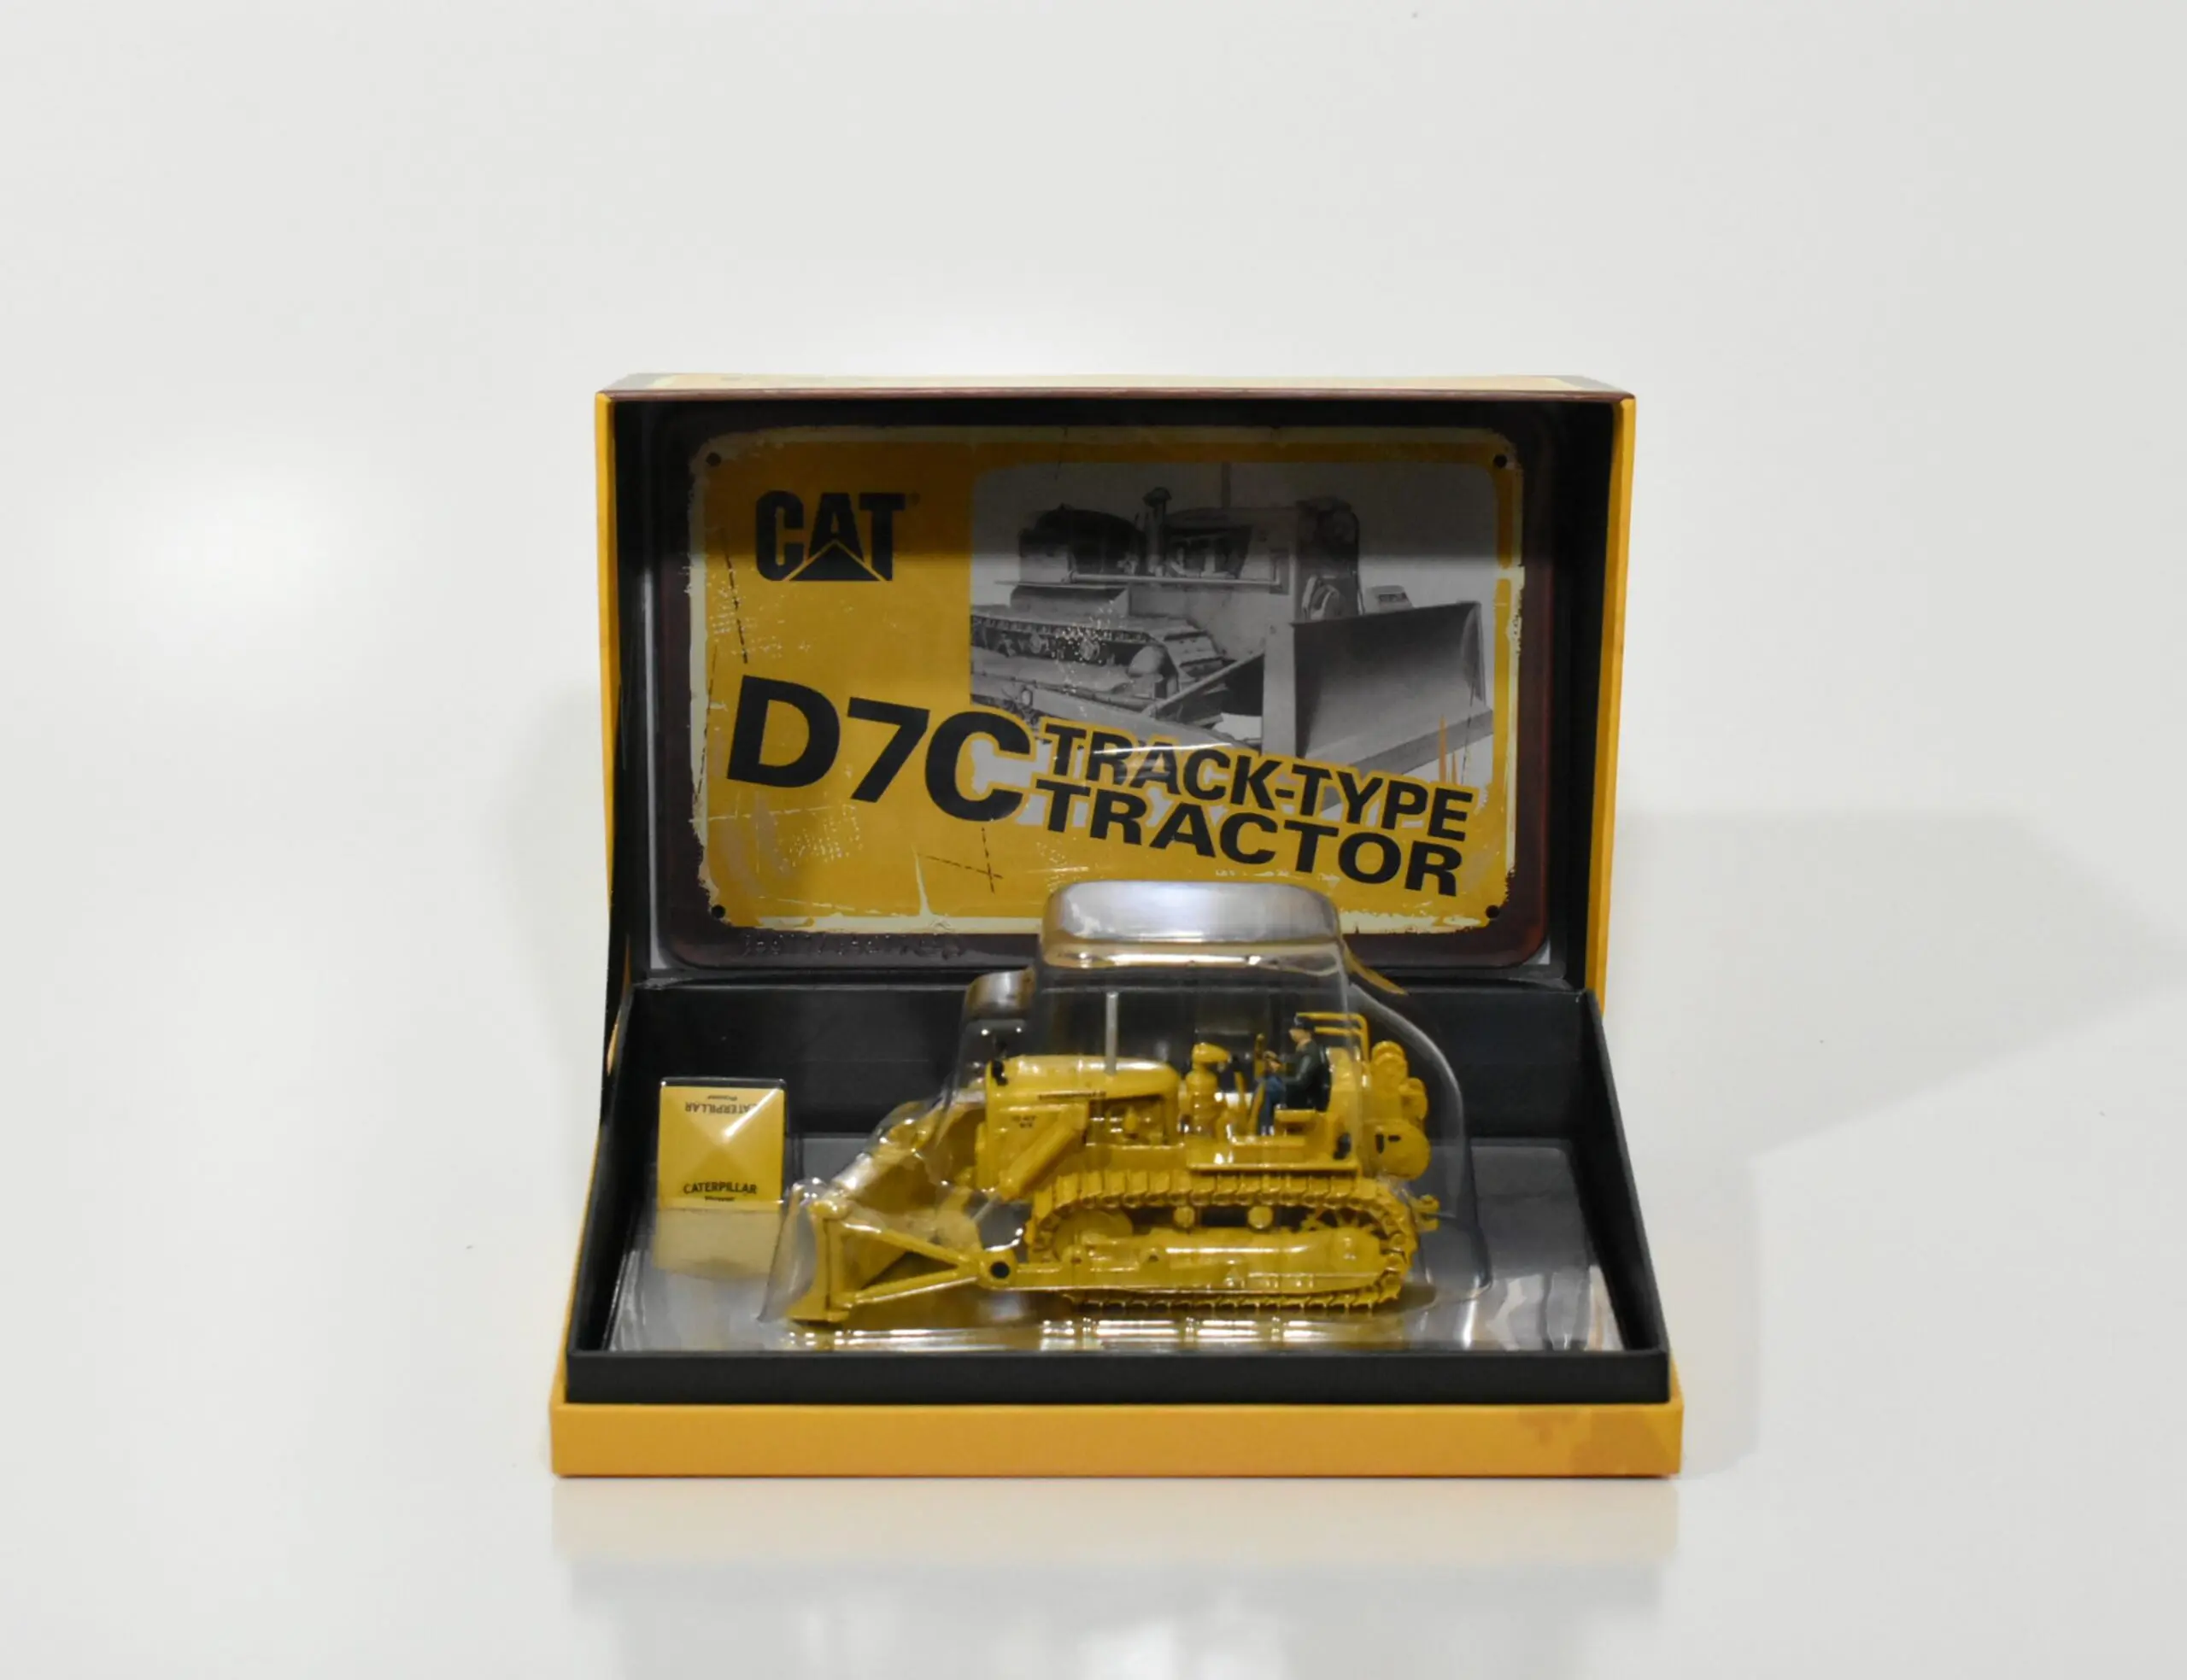 Cat Caterpillar D7c Track Type Tractor